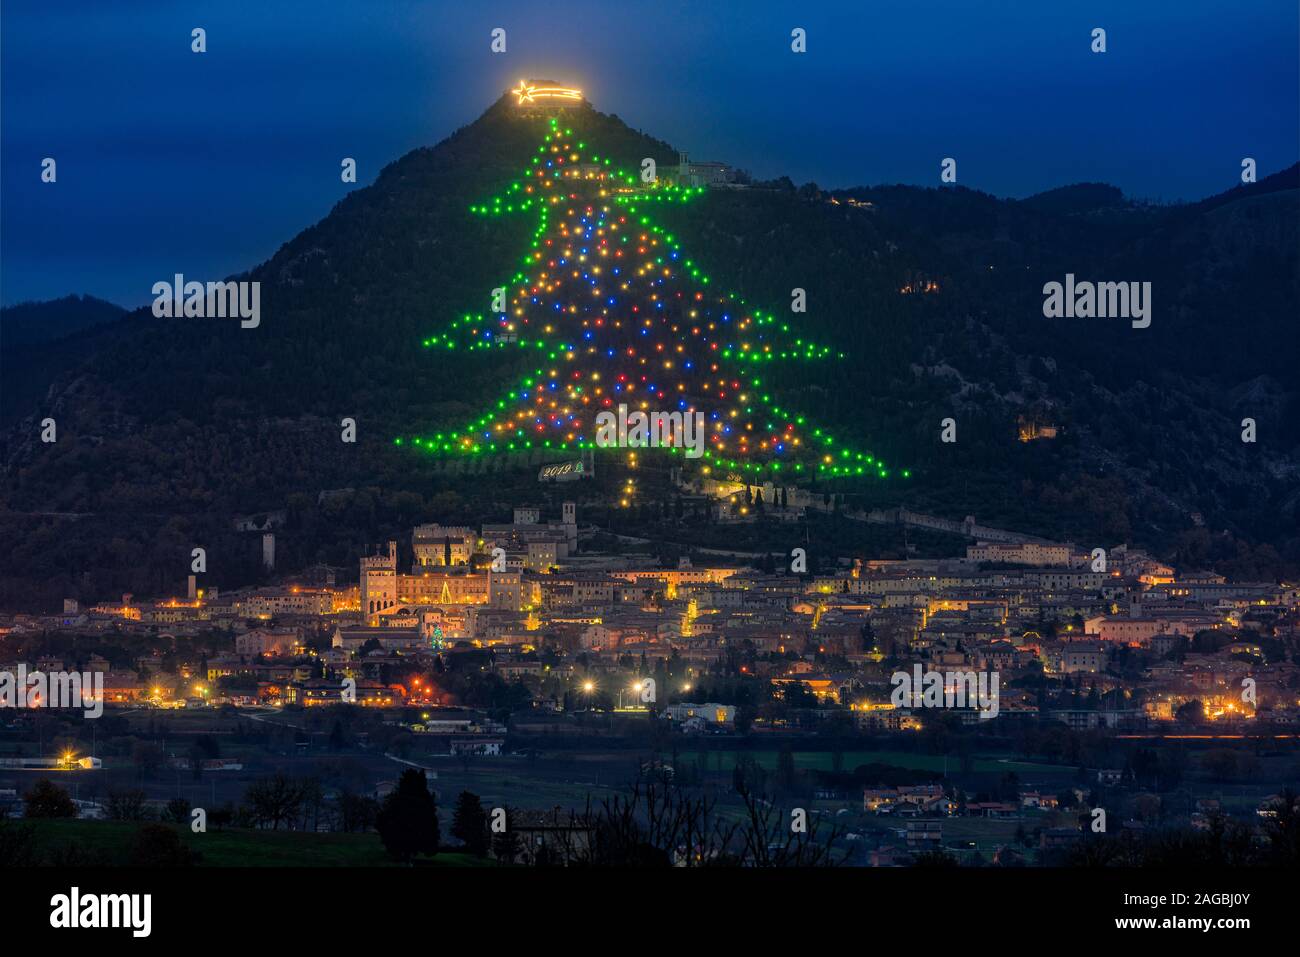 Albero Di Natale Gubbio.Gubbio Christmas Tree Immagini E Fotos Stock Alamy